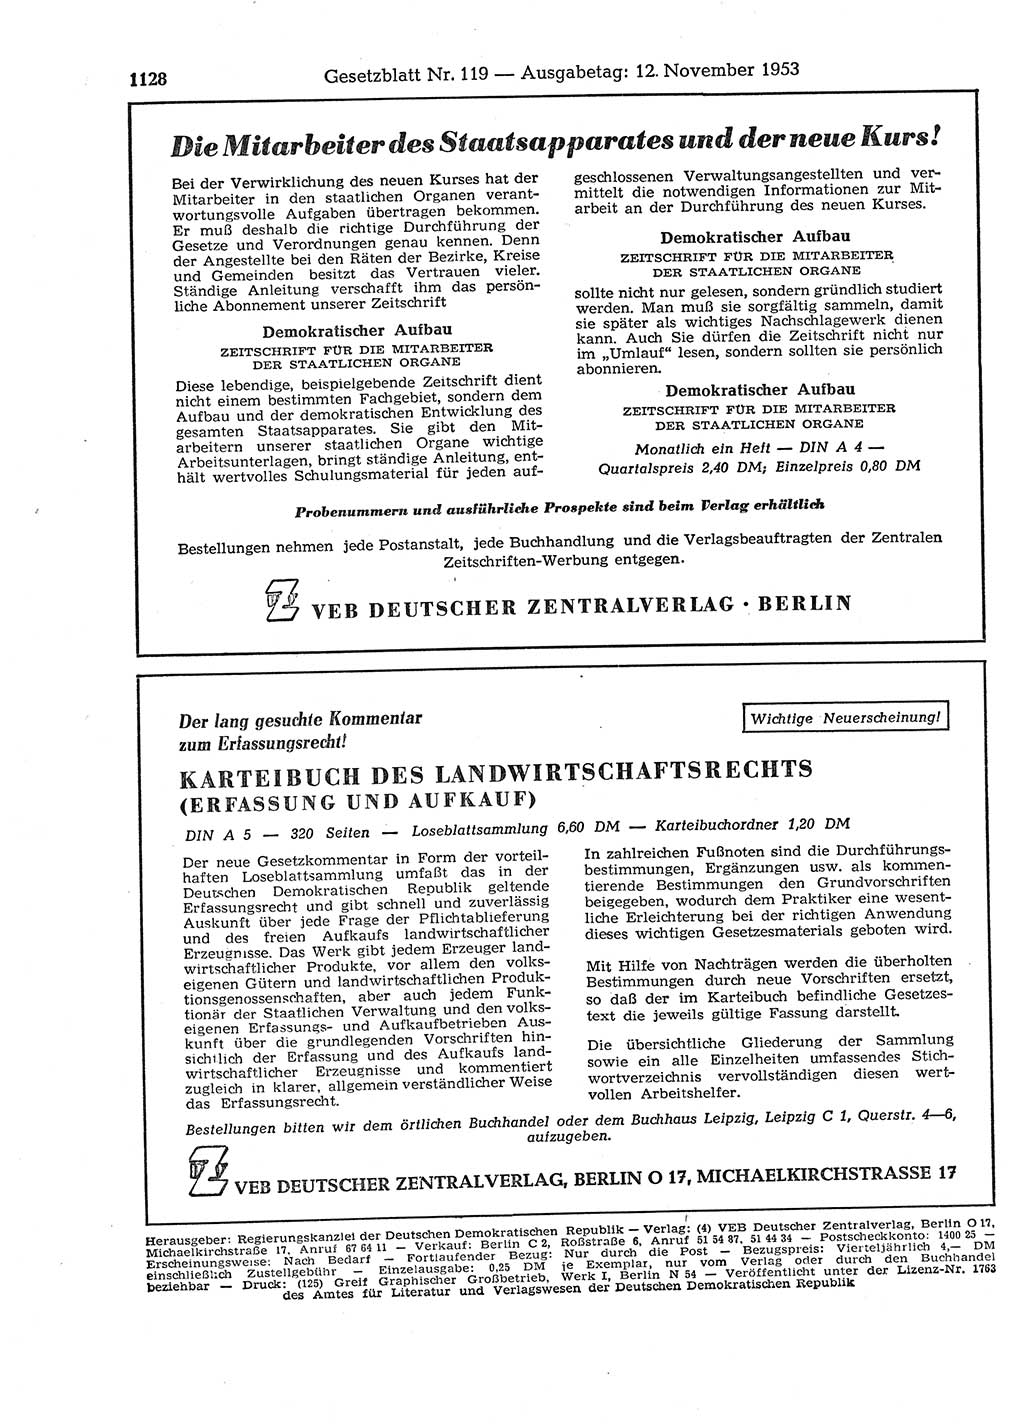 Gesetzblatt (GBl.) der Deutschen Demokratischen Republik (DDR) 1953, Seite 1128 (GBl. DDR 1953, S. 1128)